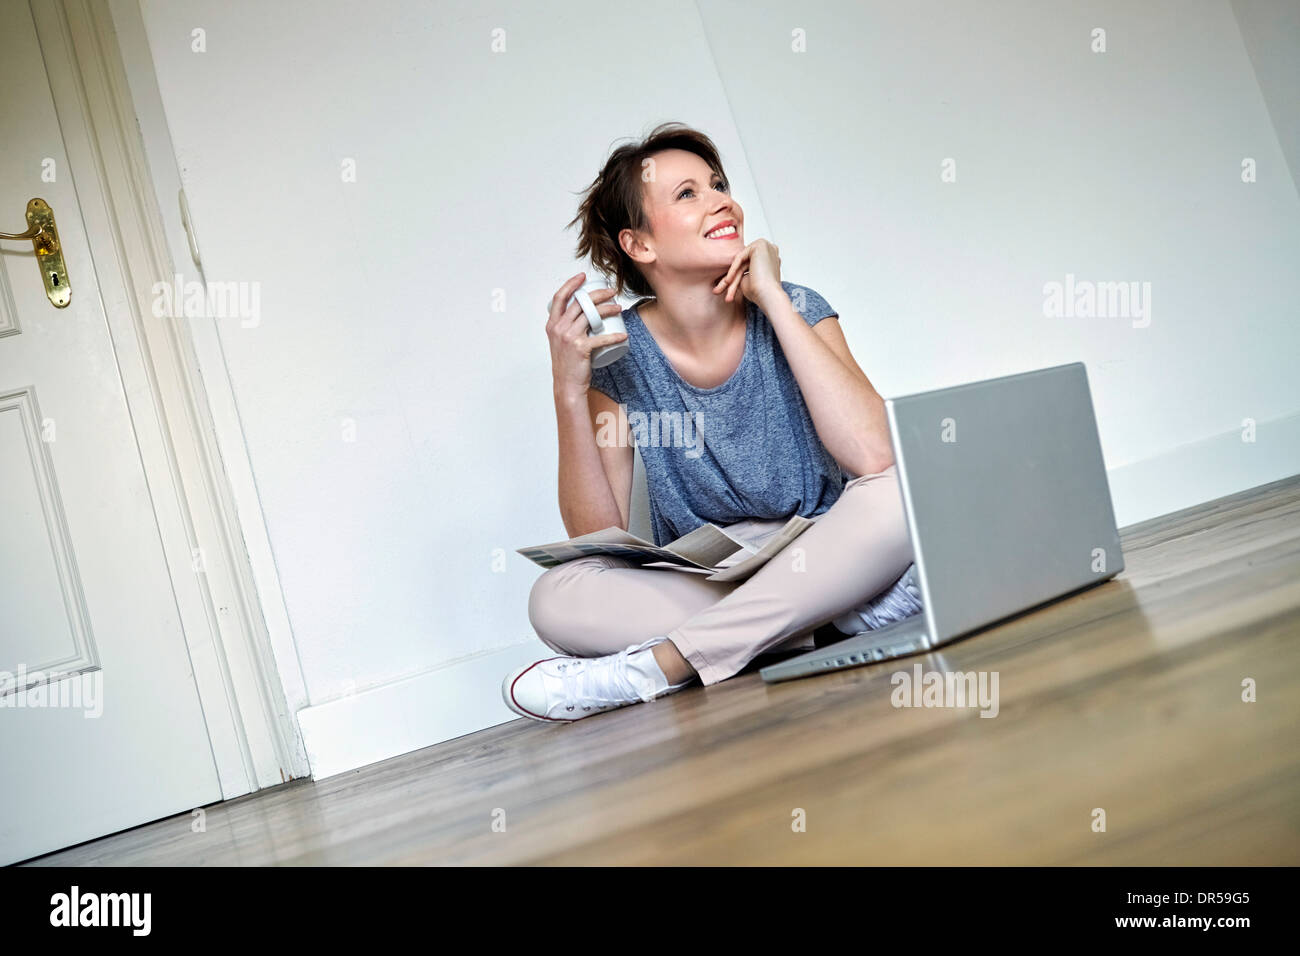 Giovane donna prende una pausa caffè, laptop in primo piano, Monaco di Baviera, Germania Foto Stock